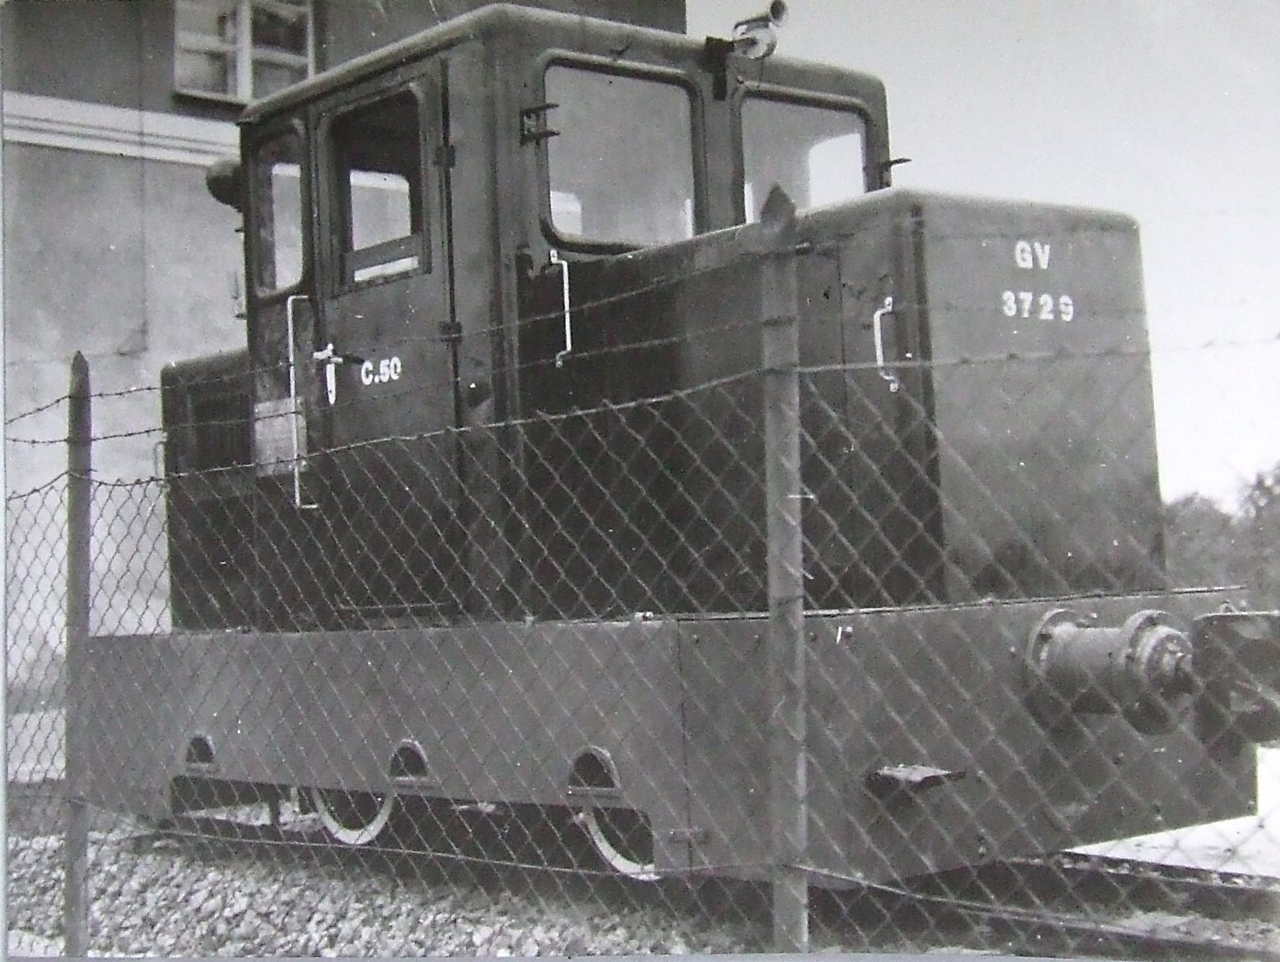 Fehérgyarmat, 1982. Szabó Menyhért felvételén az állomás épülete mellé frissen kihelyezett C50-es látható. A képre kattintva galéria nyílik (fotók: Indóház-archív)